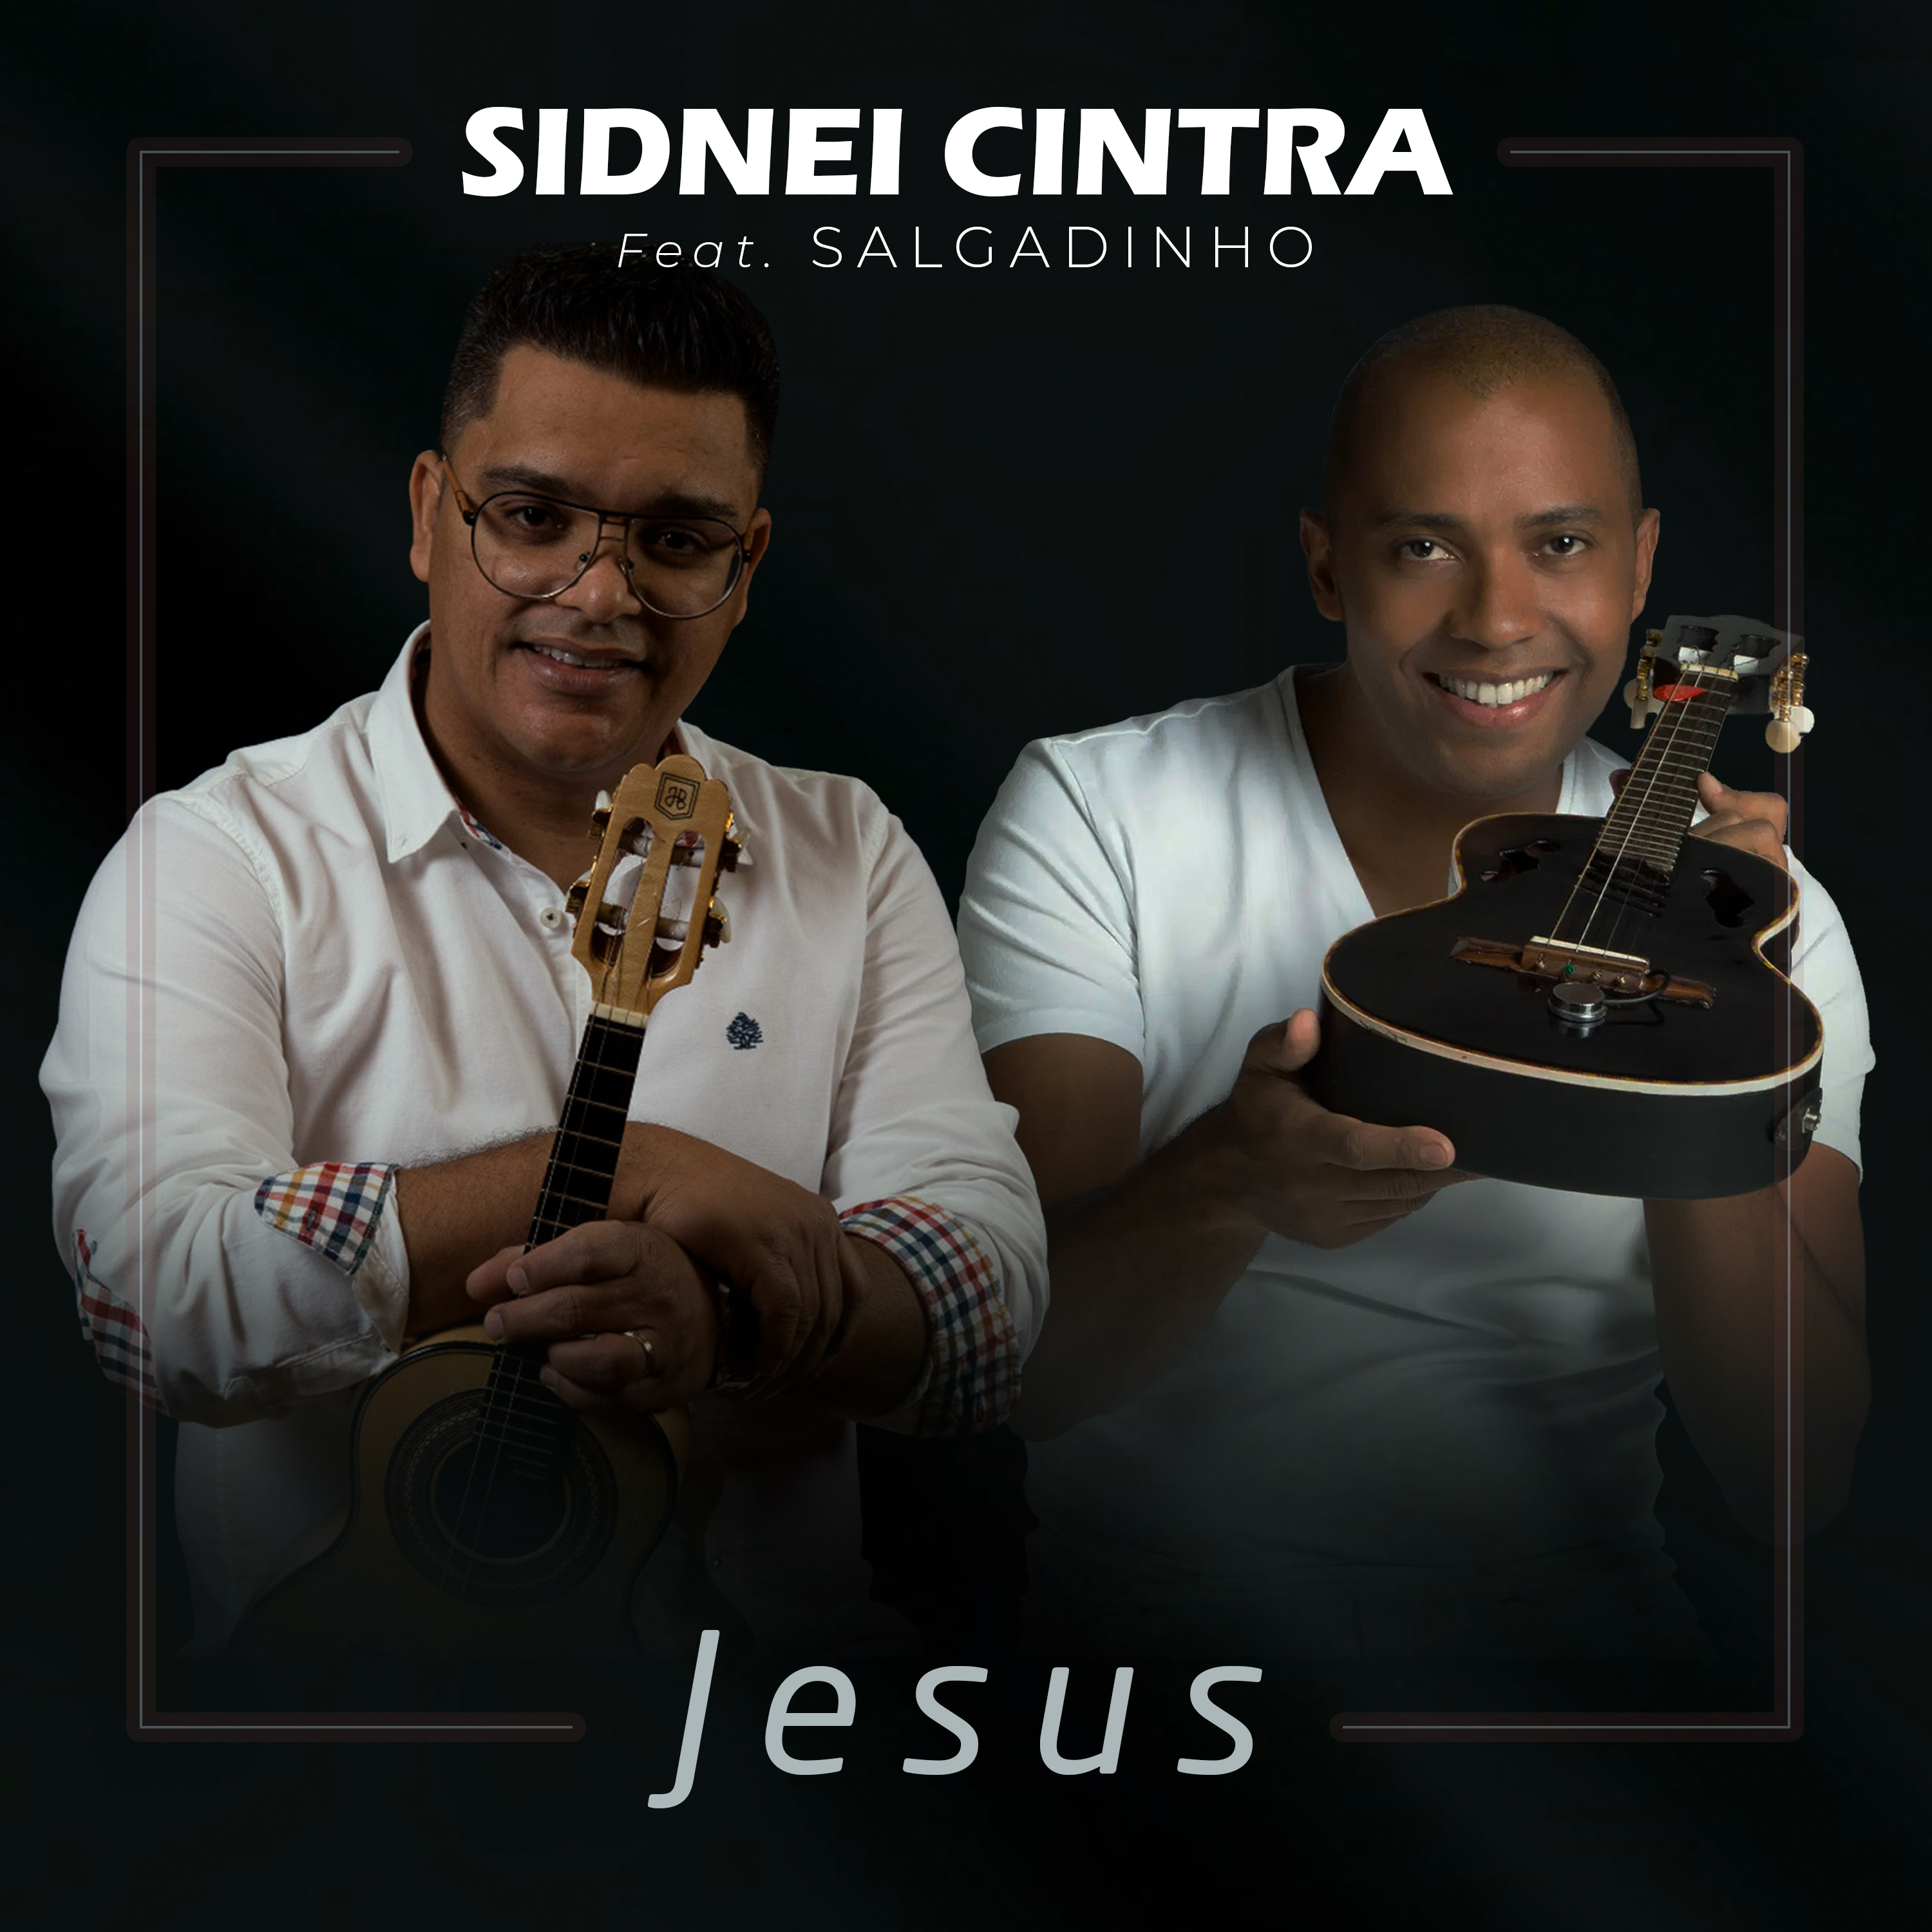 Com a participação de Salgadinho, Sidnei Cintra lança single autoral “Jesus”